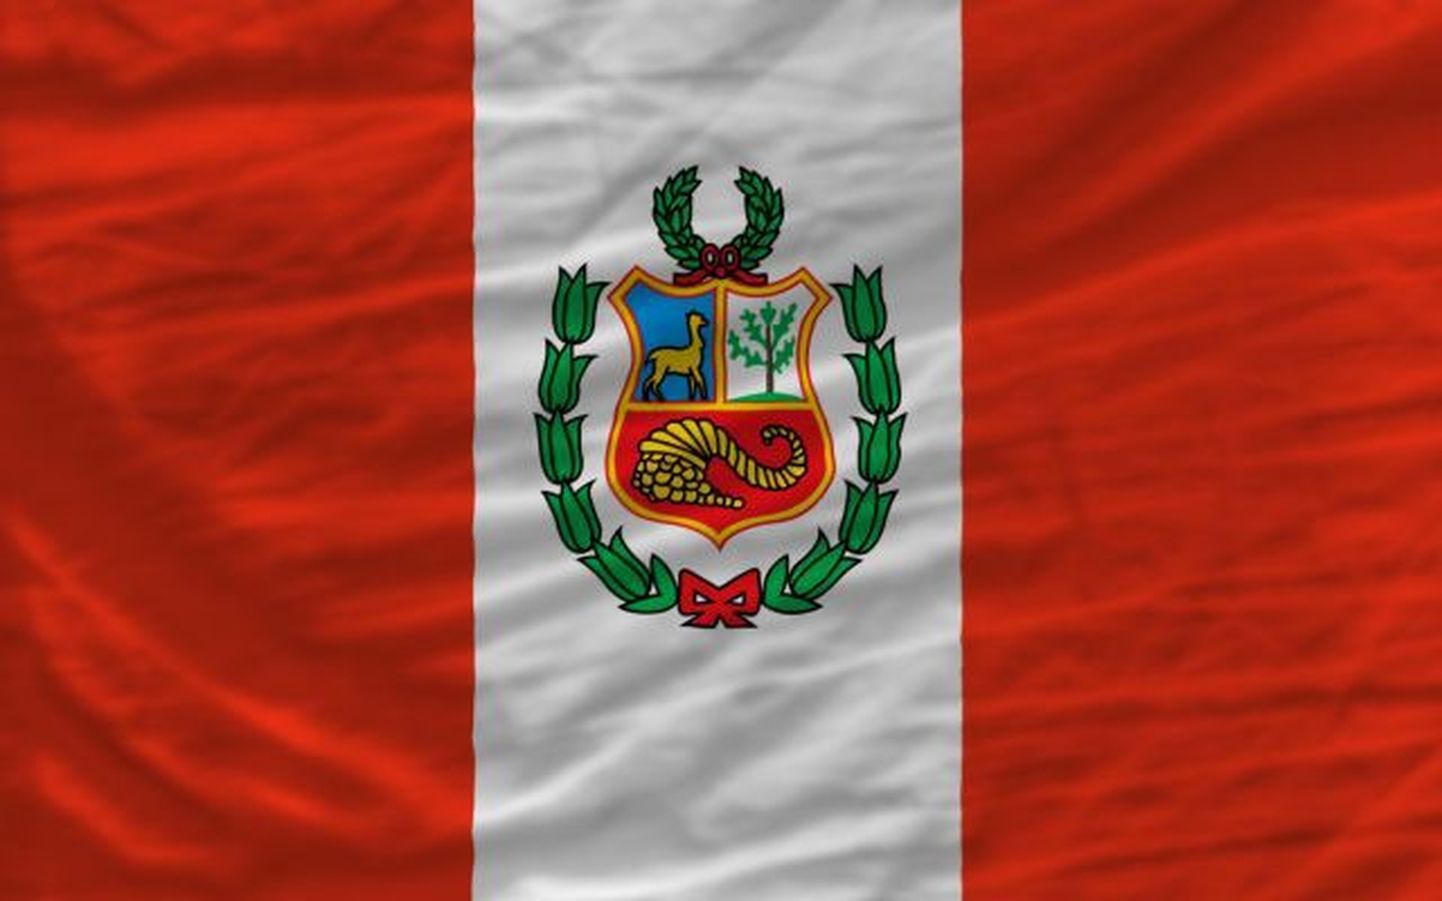 Peruu lipp